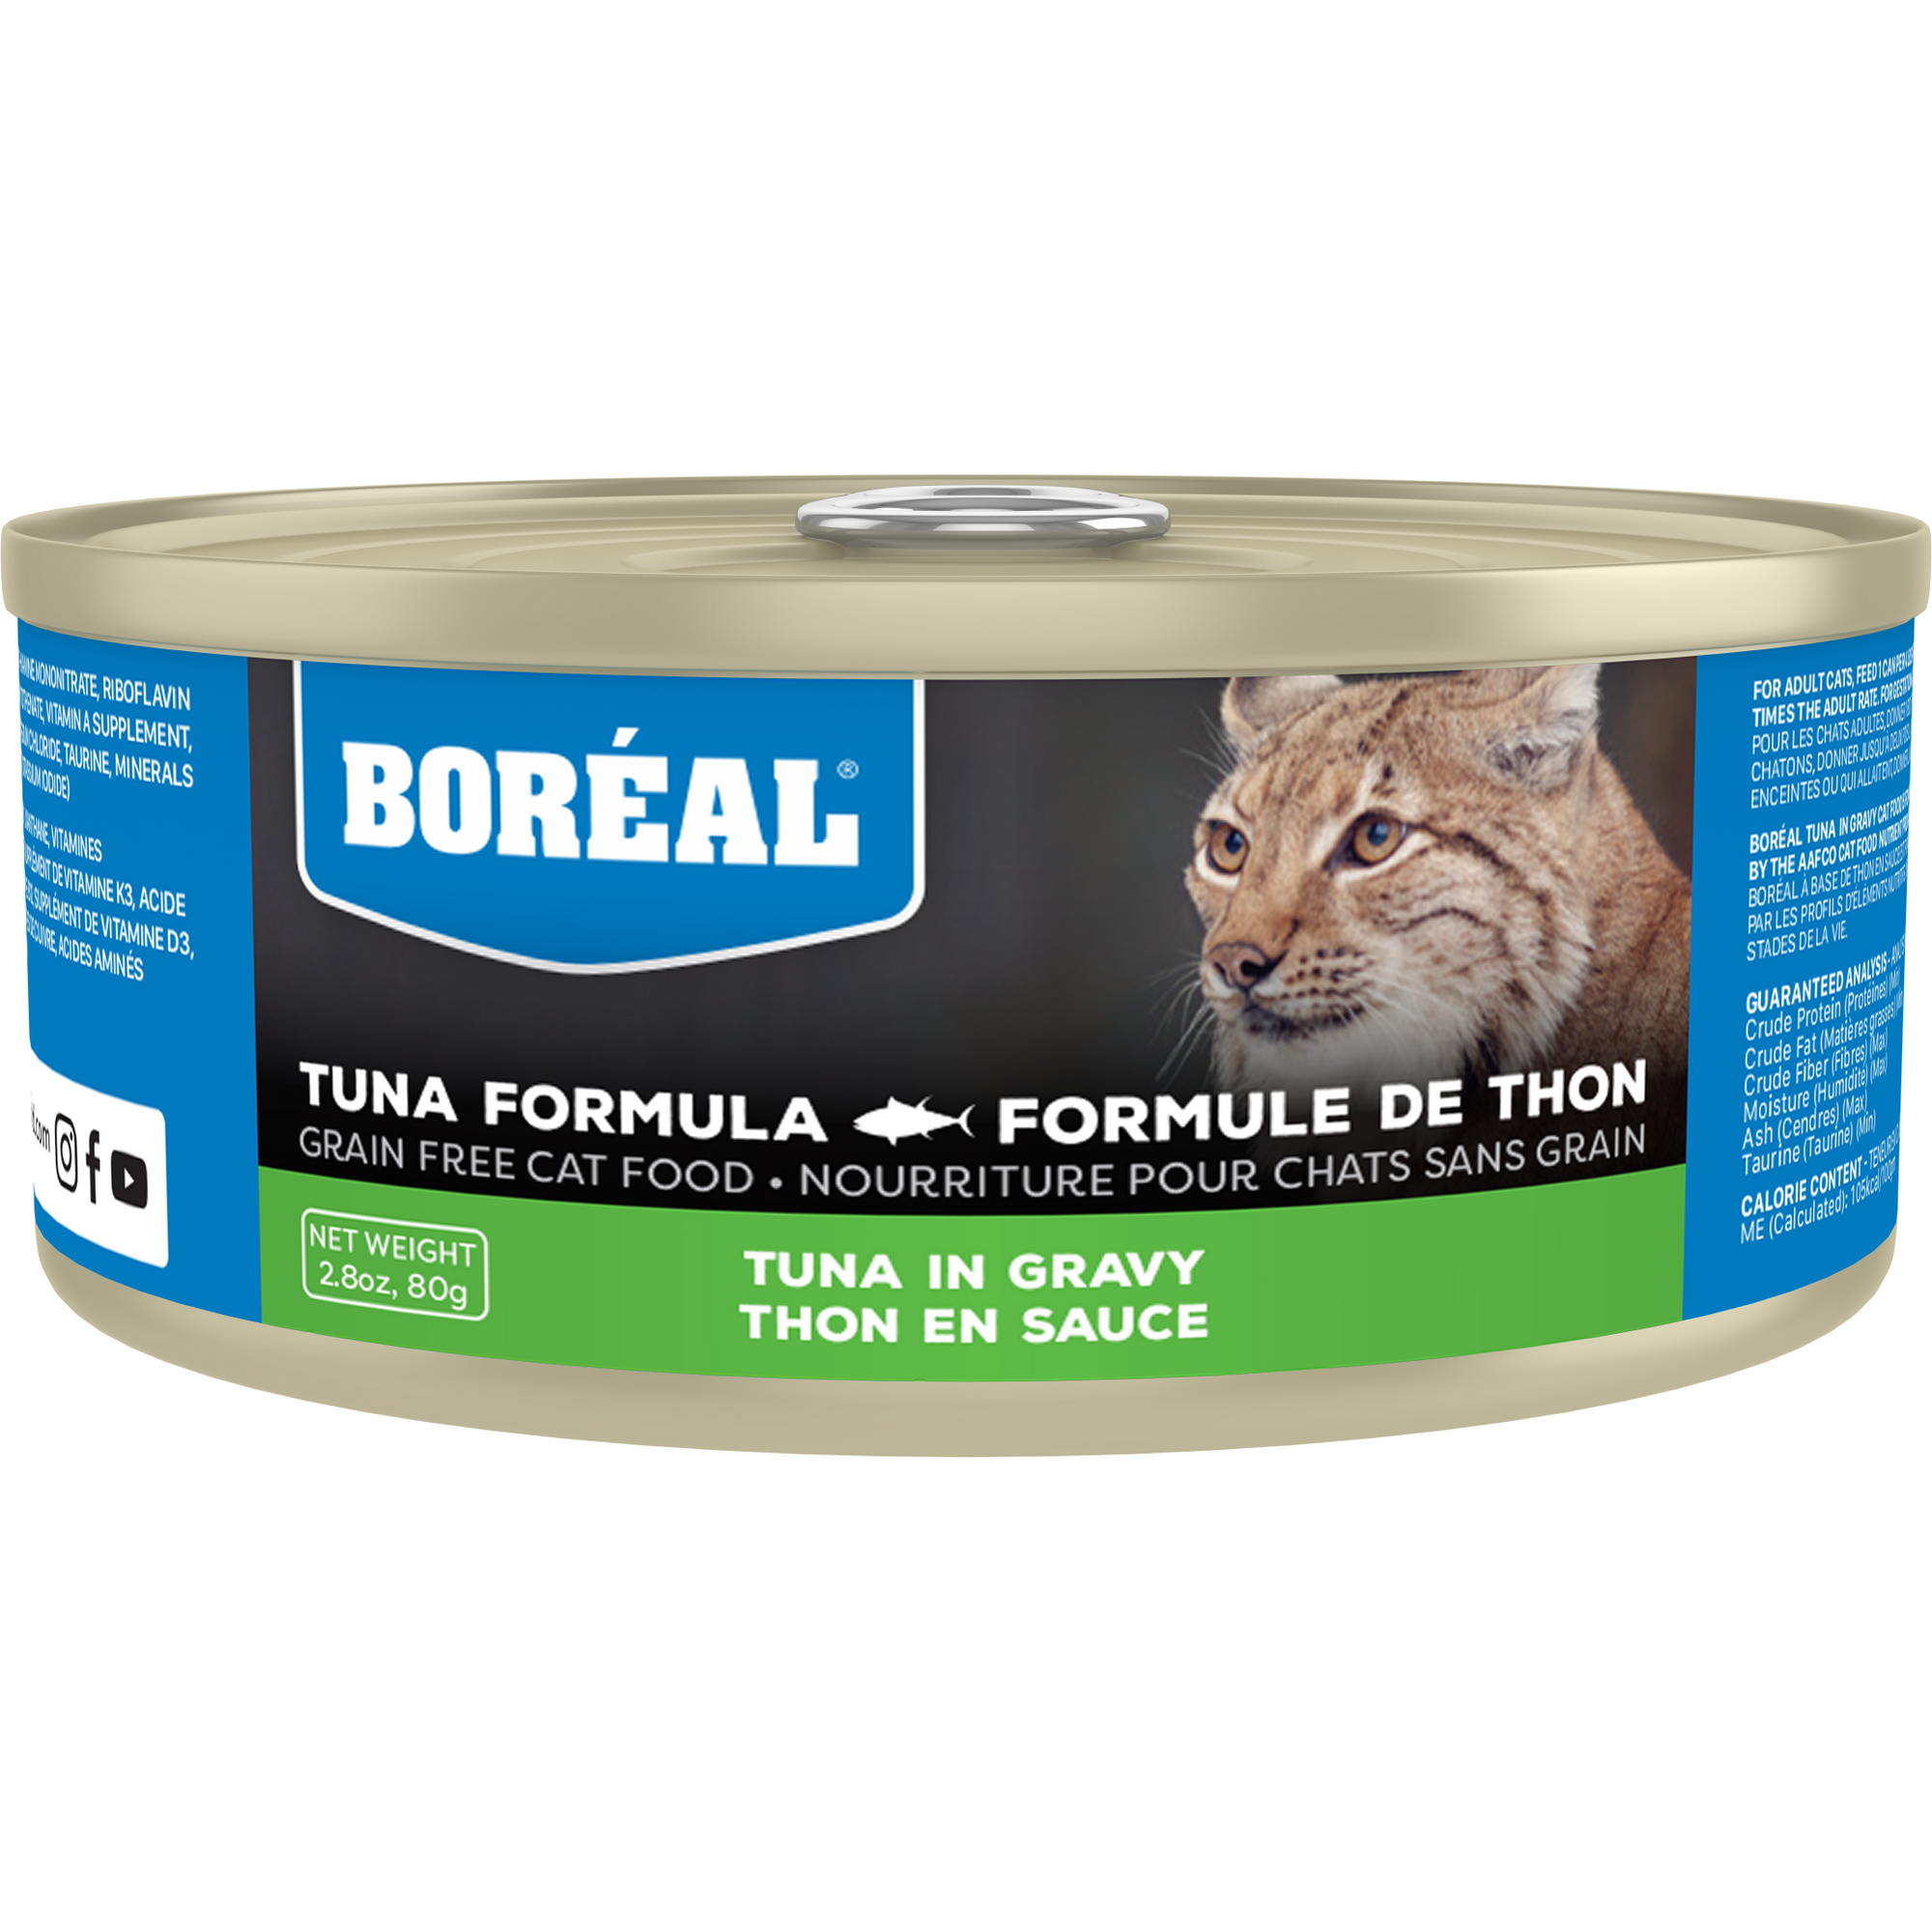 Royal Canin Contrôle de l'appétit - Nourriture pour chats - Safari